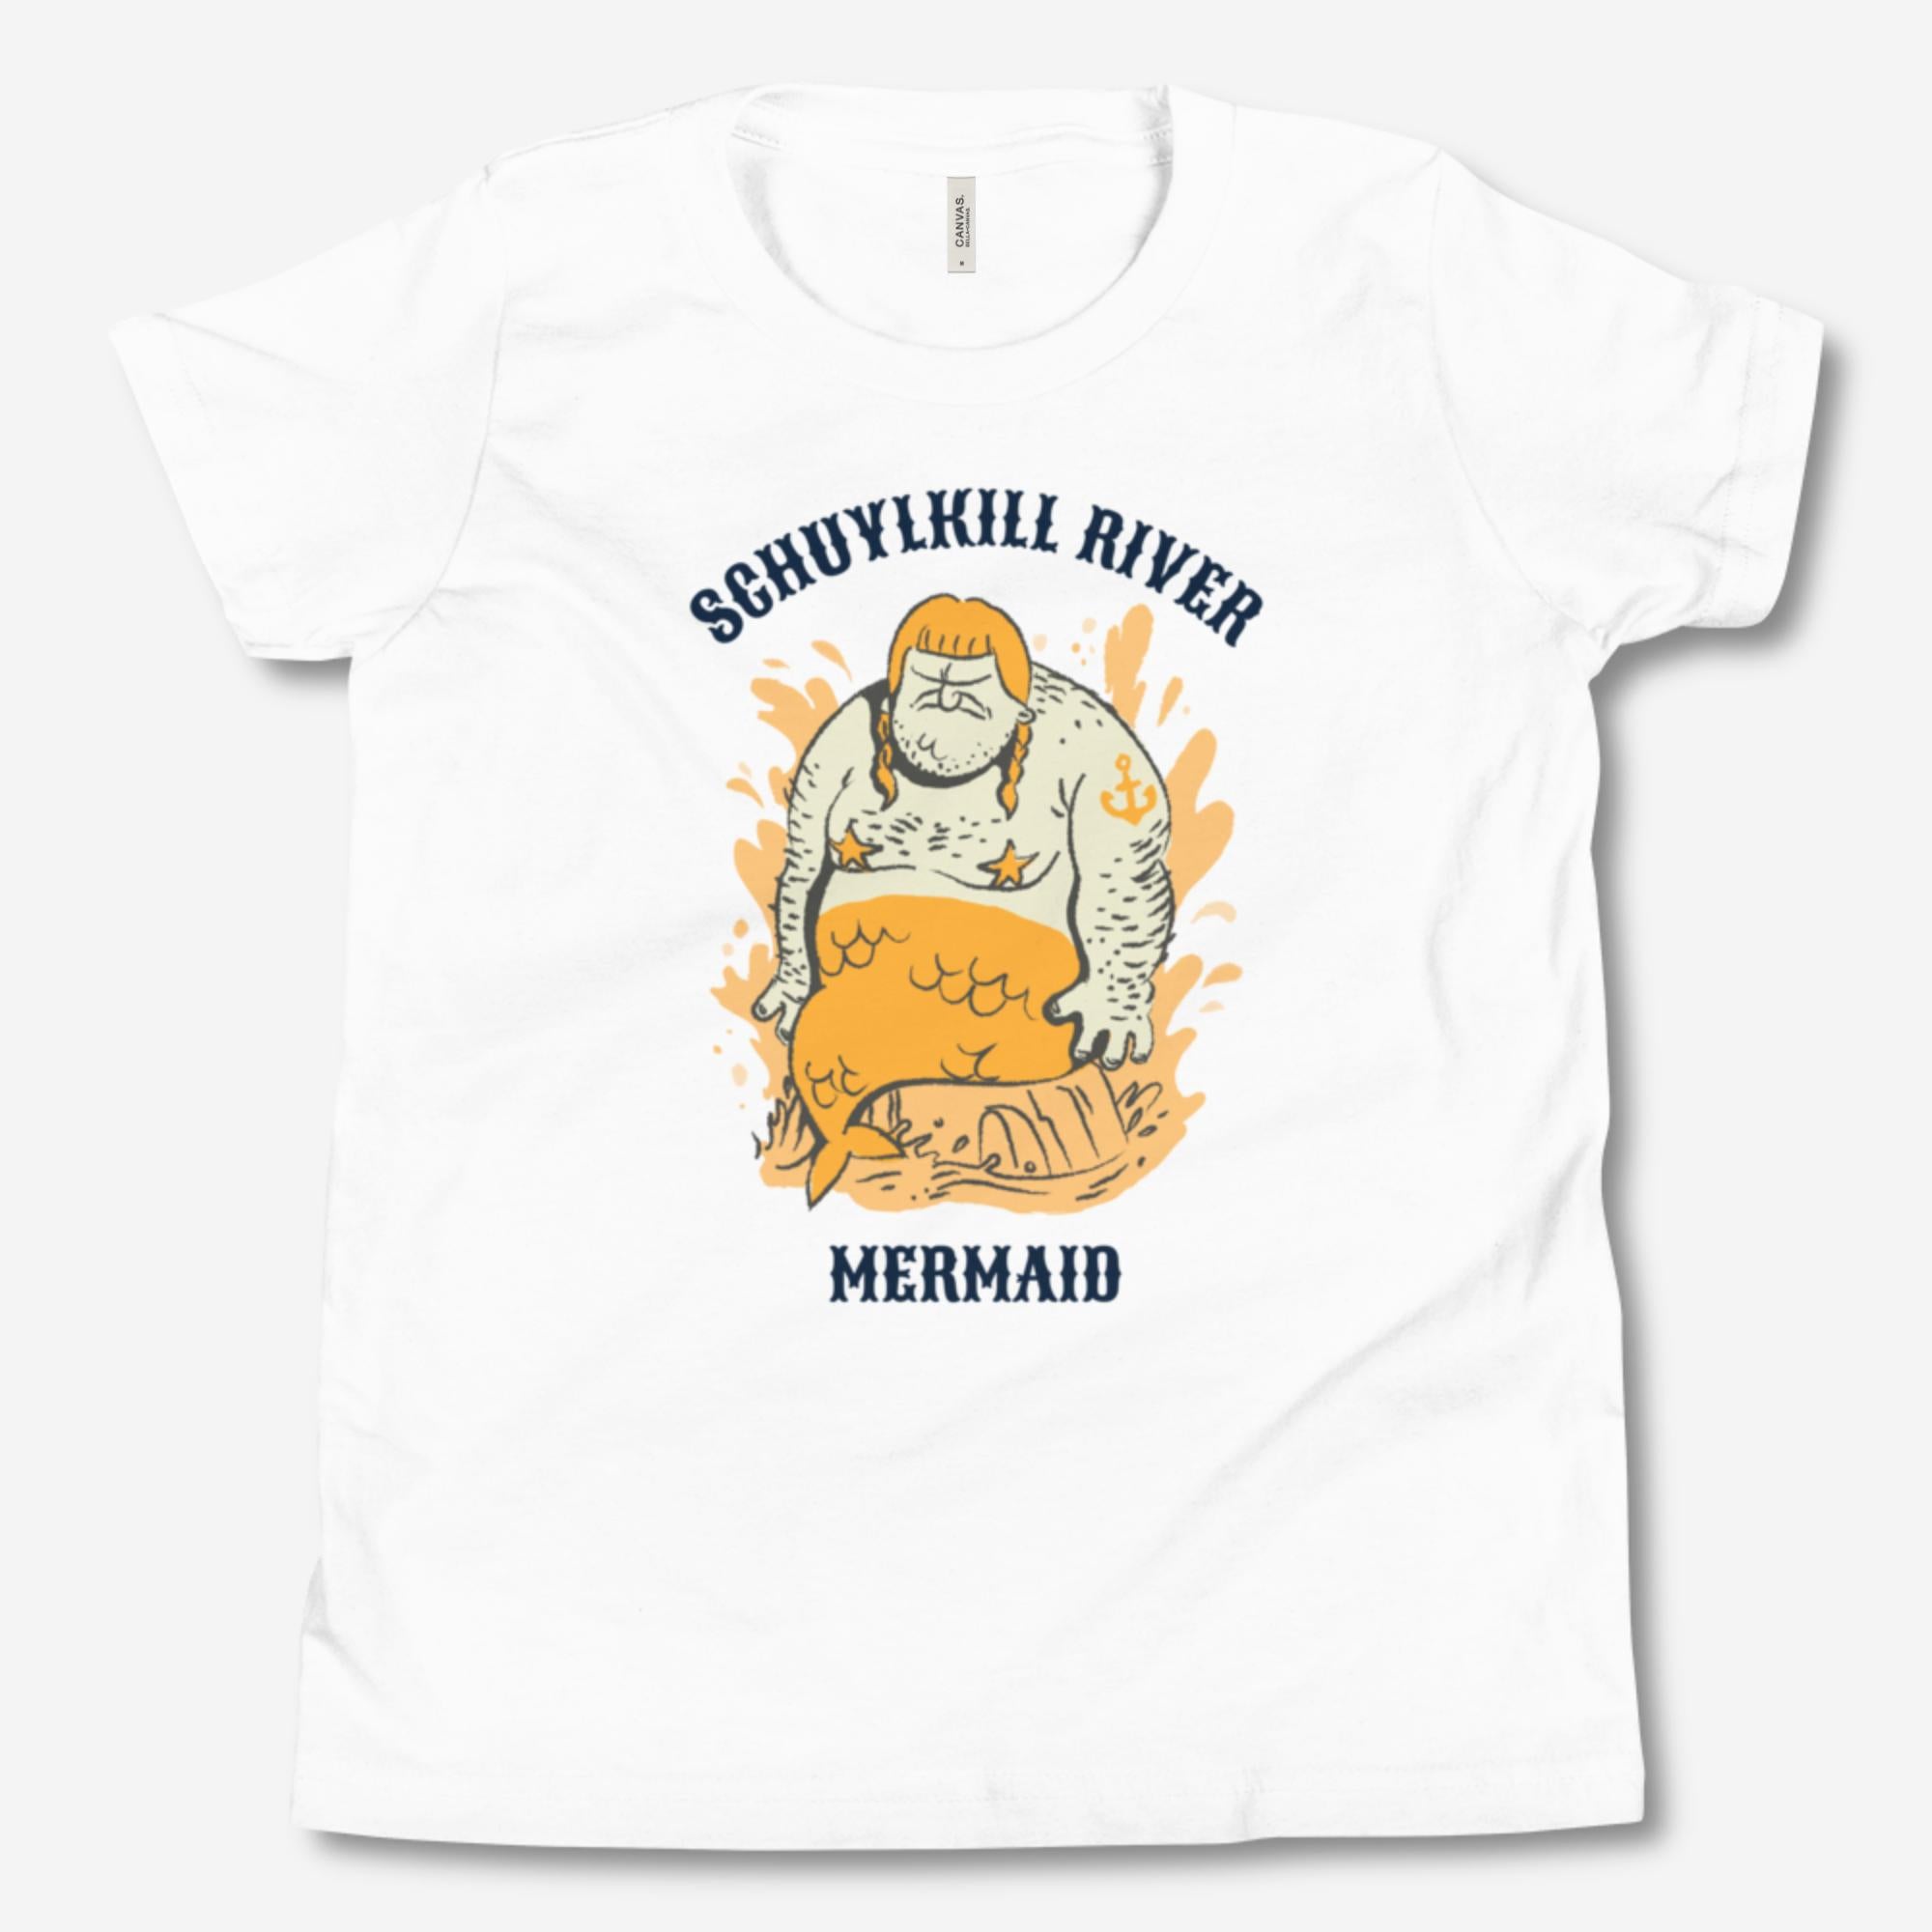 "Schuylkill River Mermaid" Youth Tee